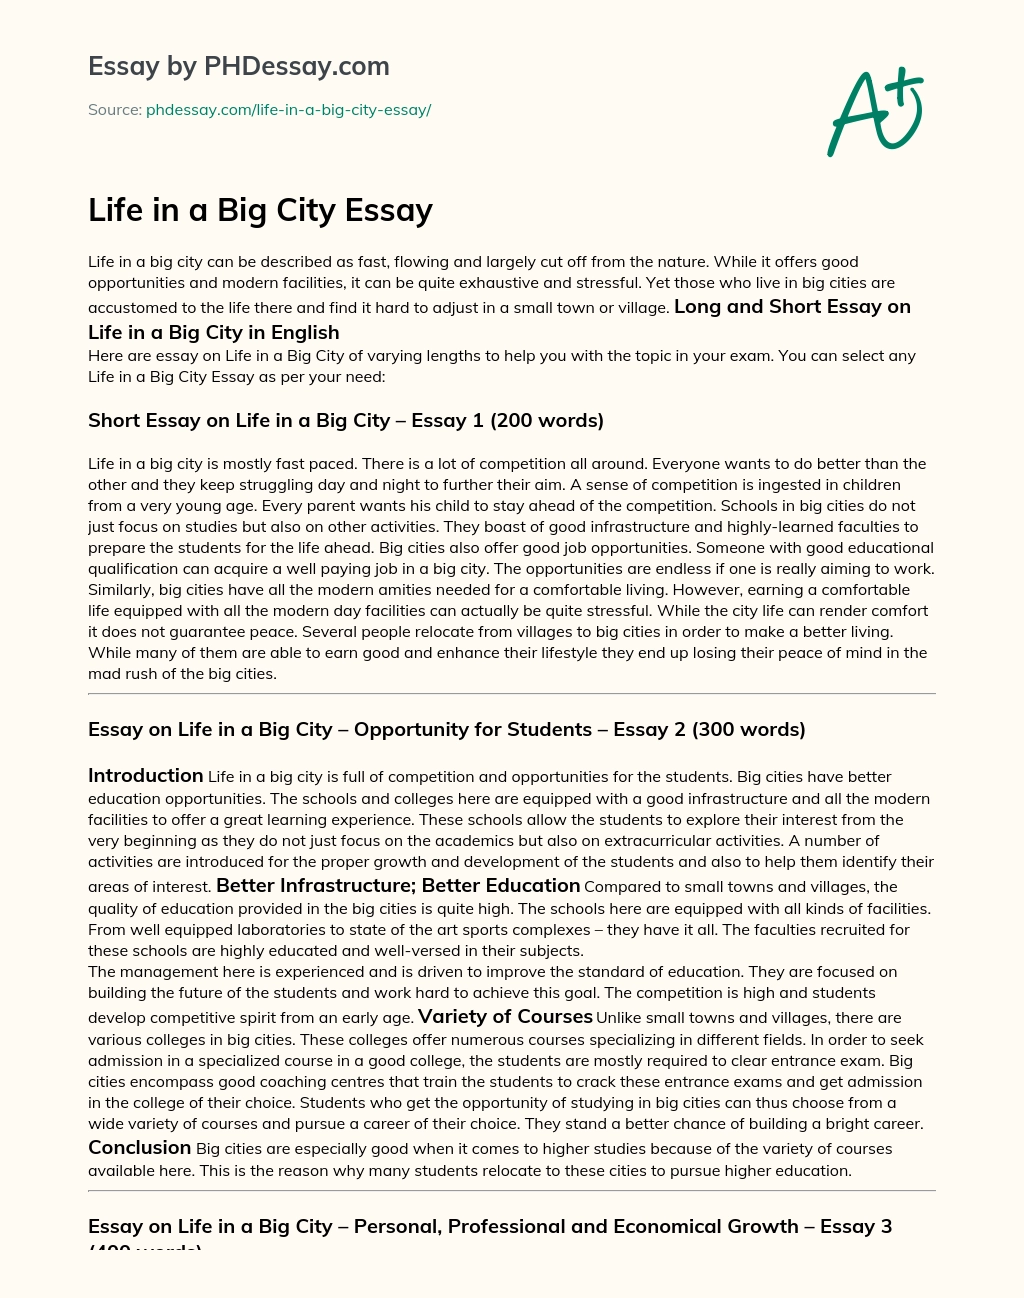 Life in a Big City Essay essay